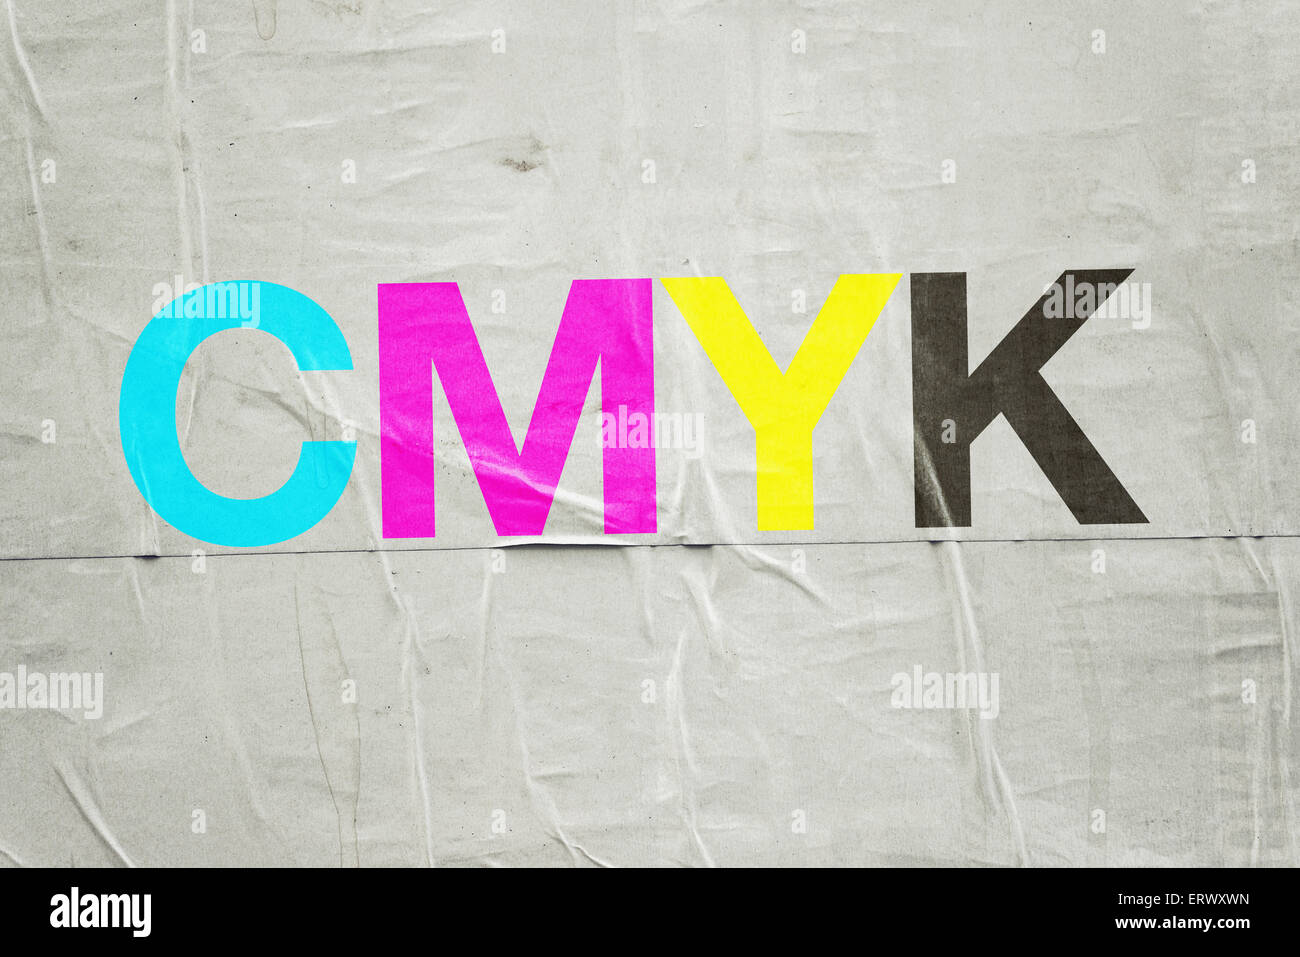 CMYK per la tecnologia di stampa digitale con ciano, magenta, giallo e nero lettere incollate su carta da poster Foto Stock